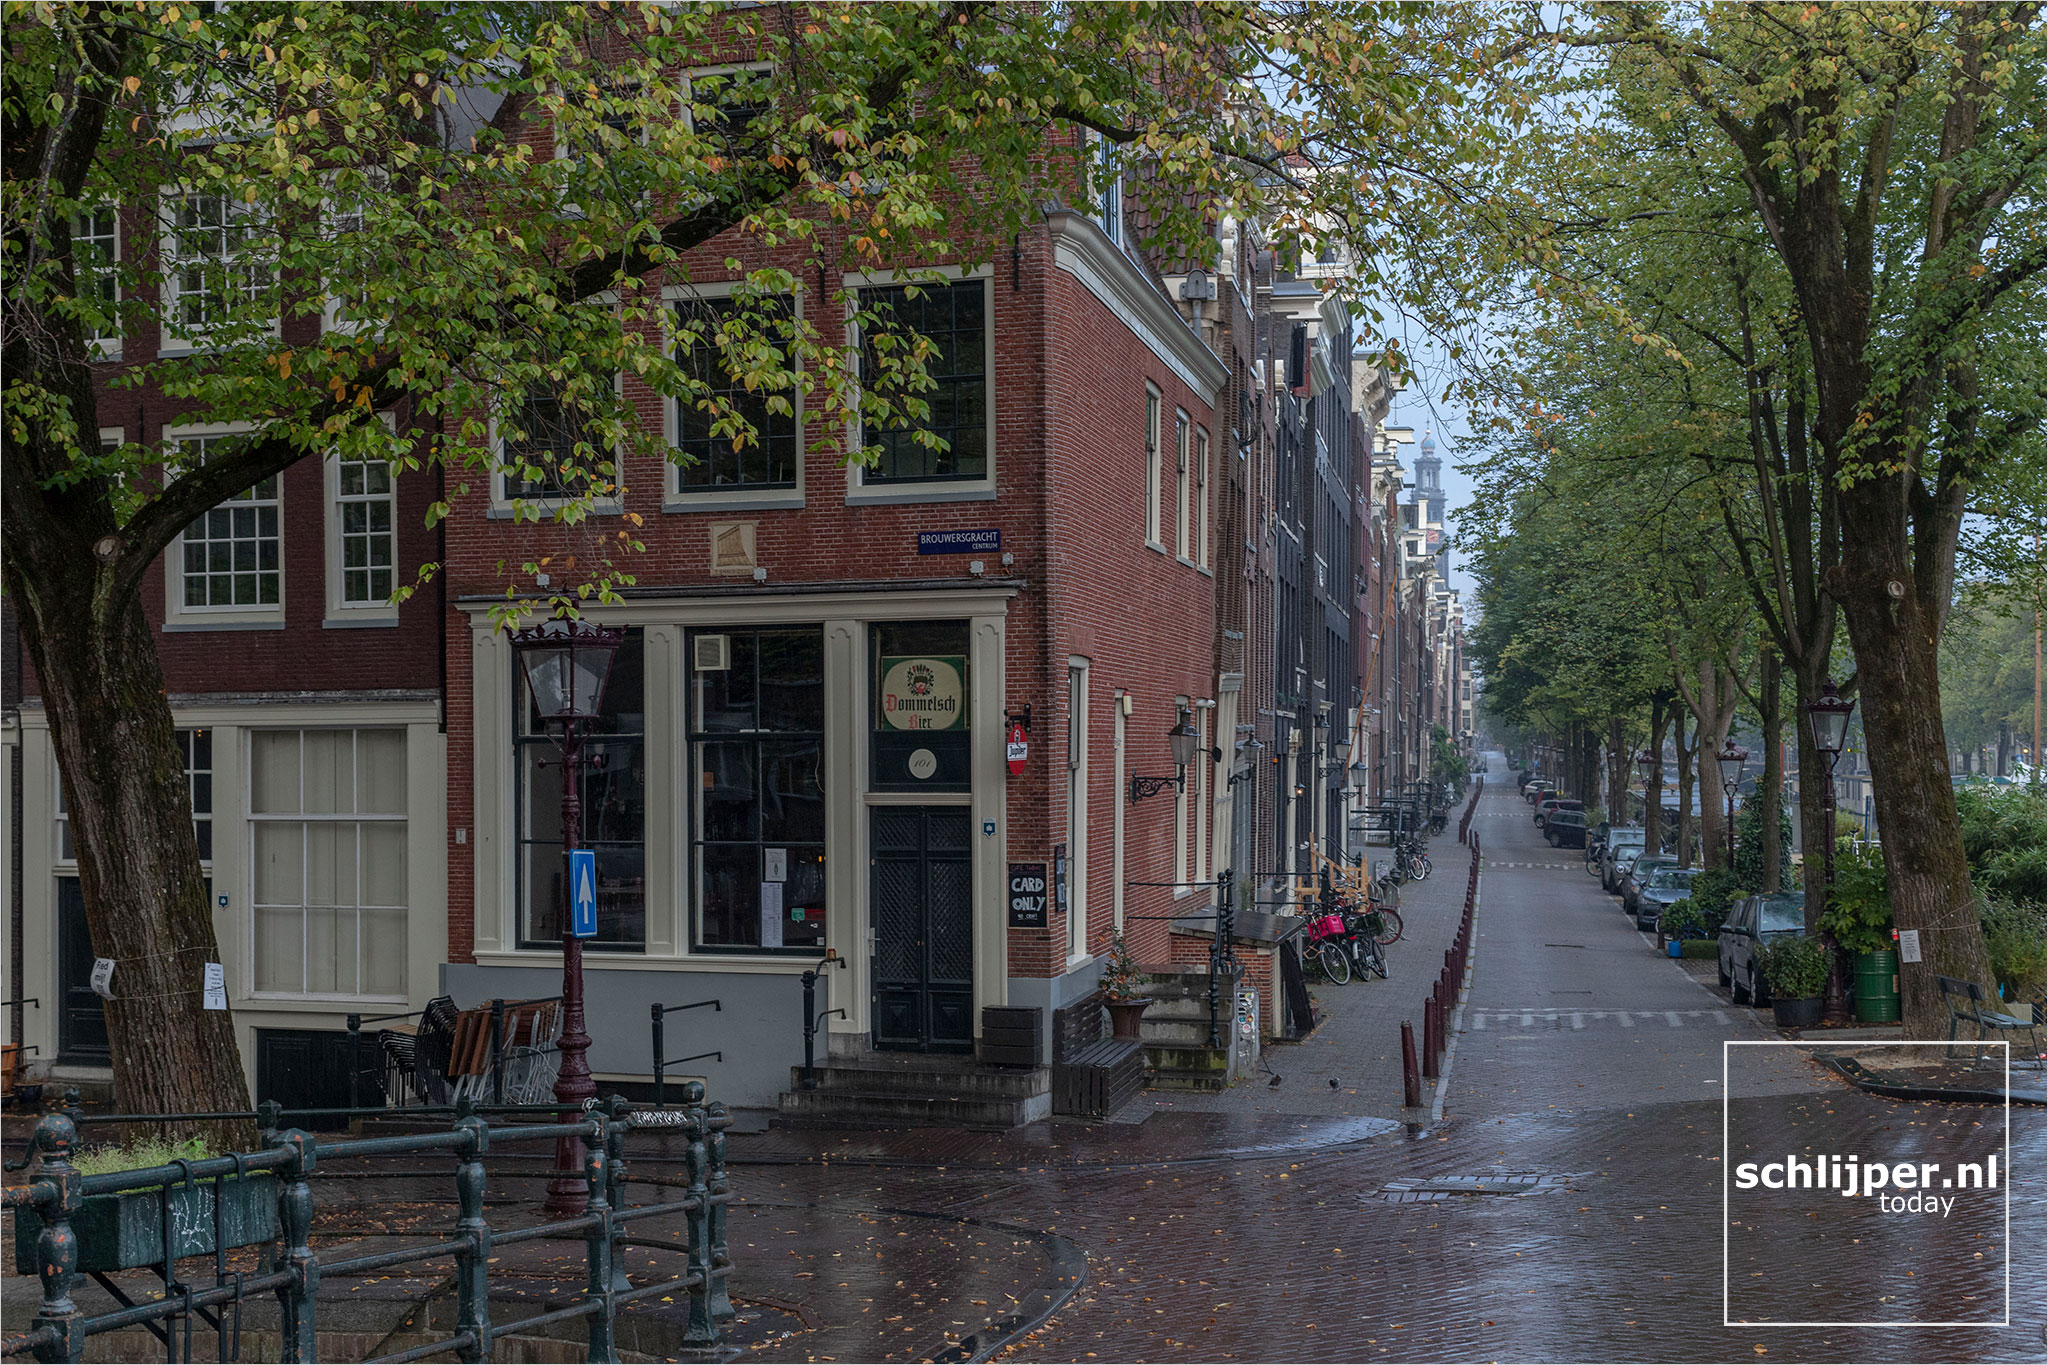 The Netherlands, Amsterdam, 26 september 2021